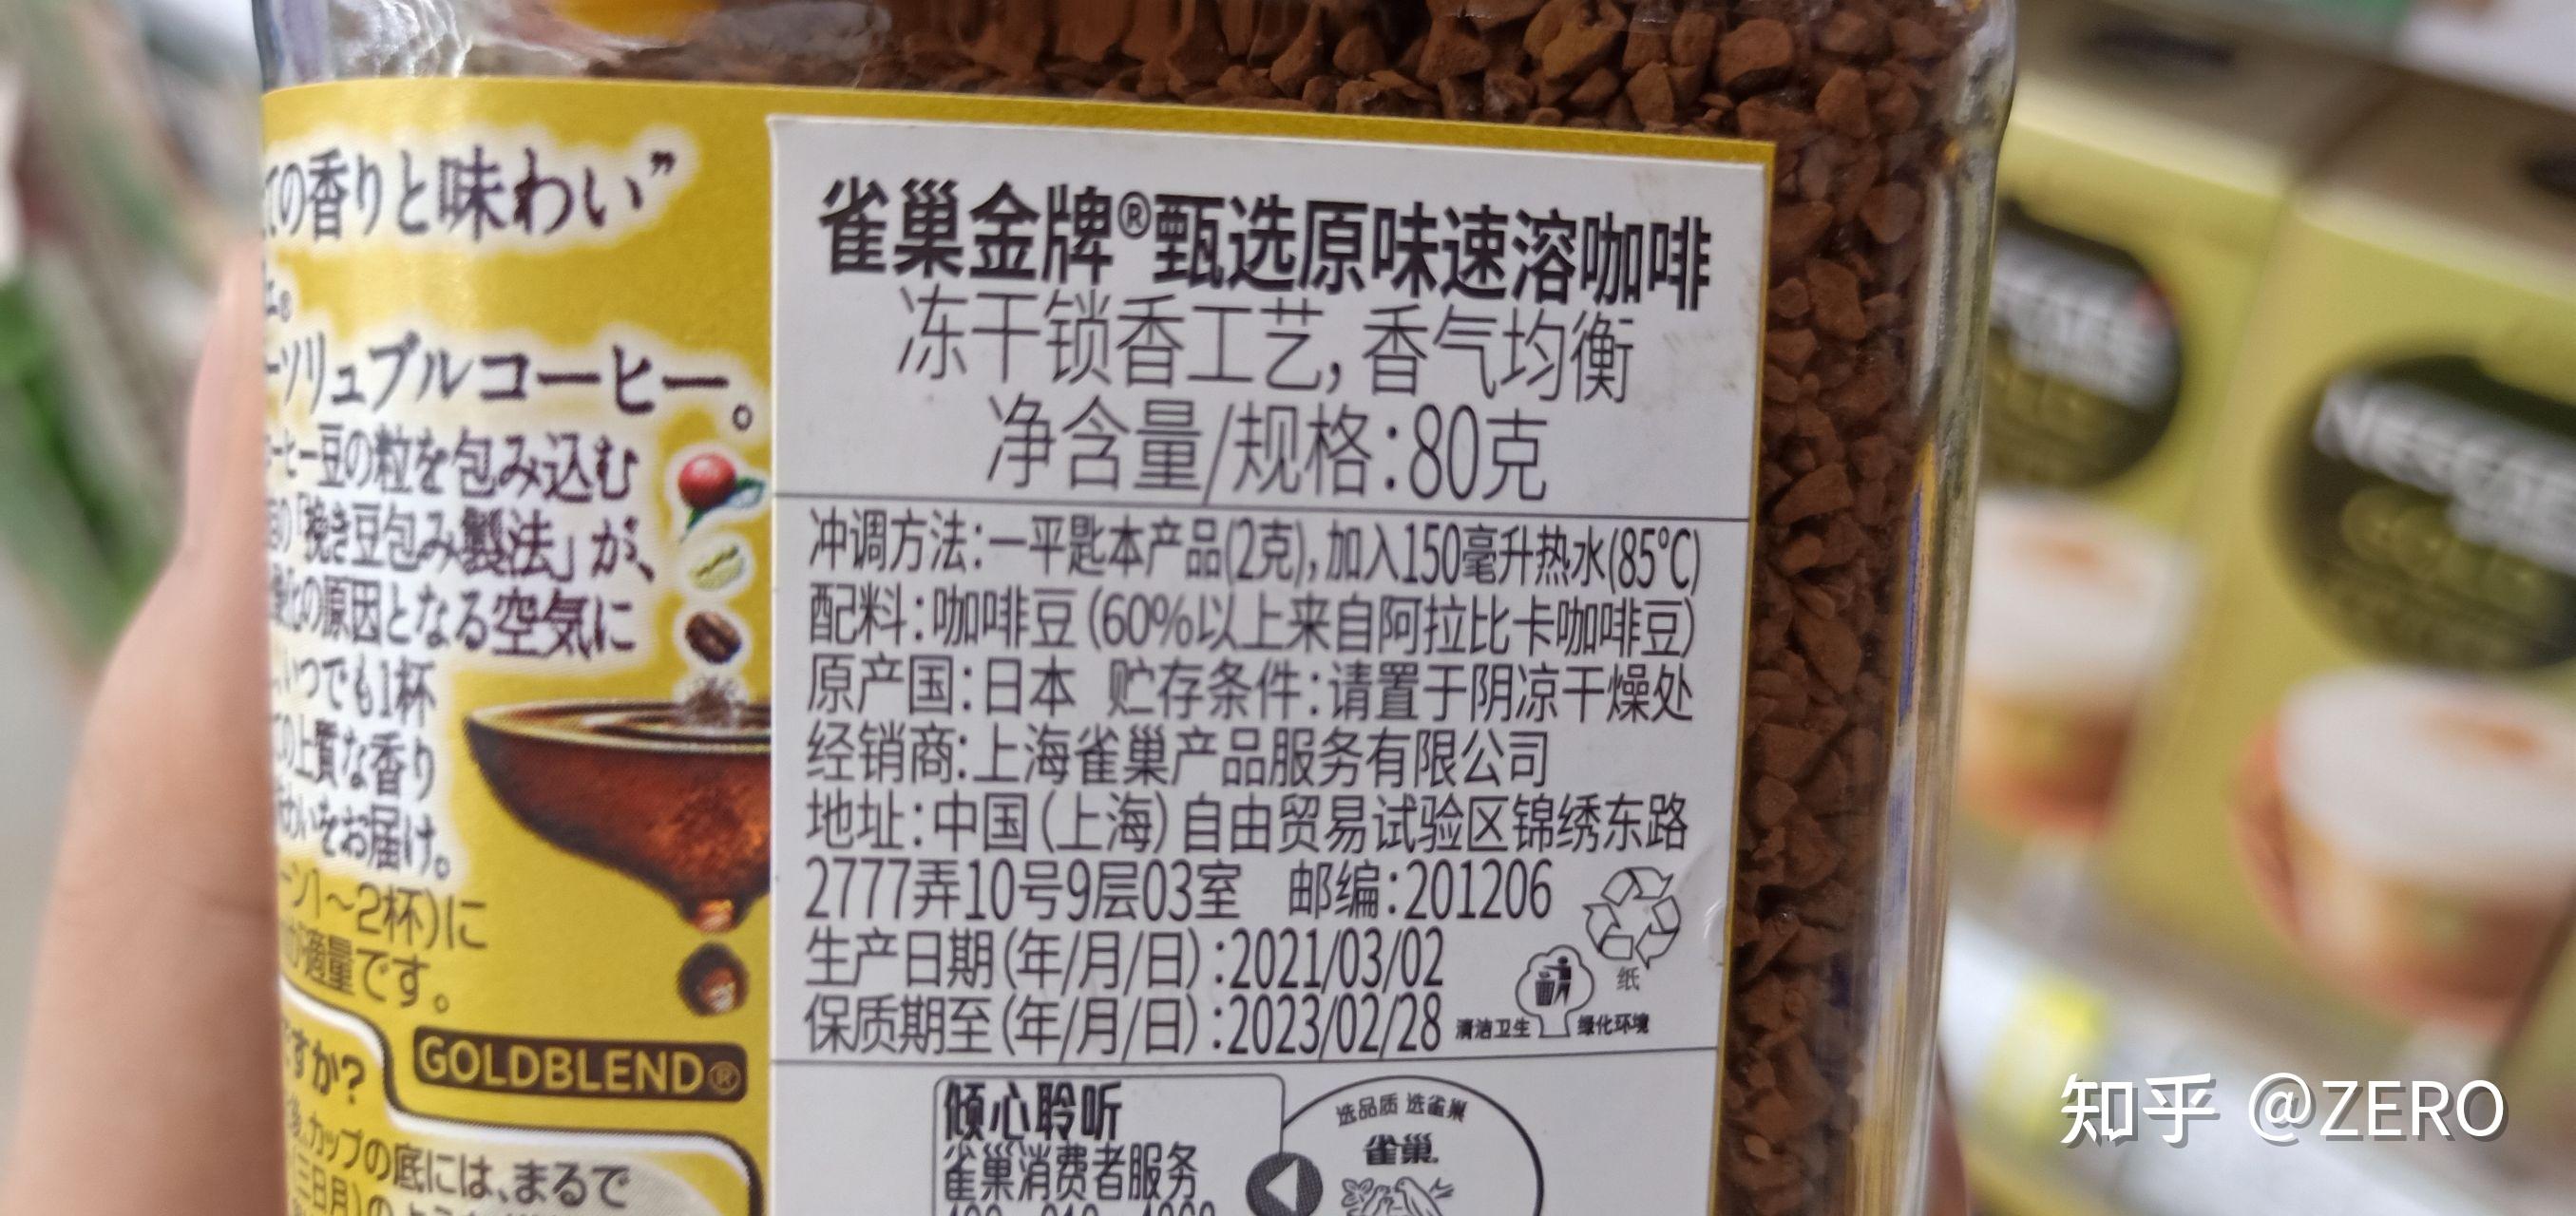 雀巢咖啡系列产品的配料、营养成分以及市面价格！ - 知乎